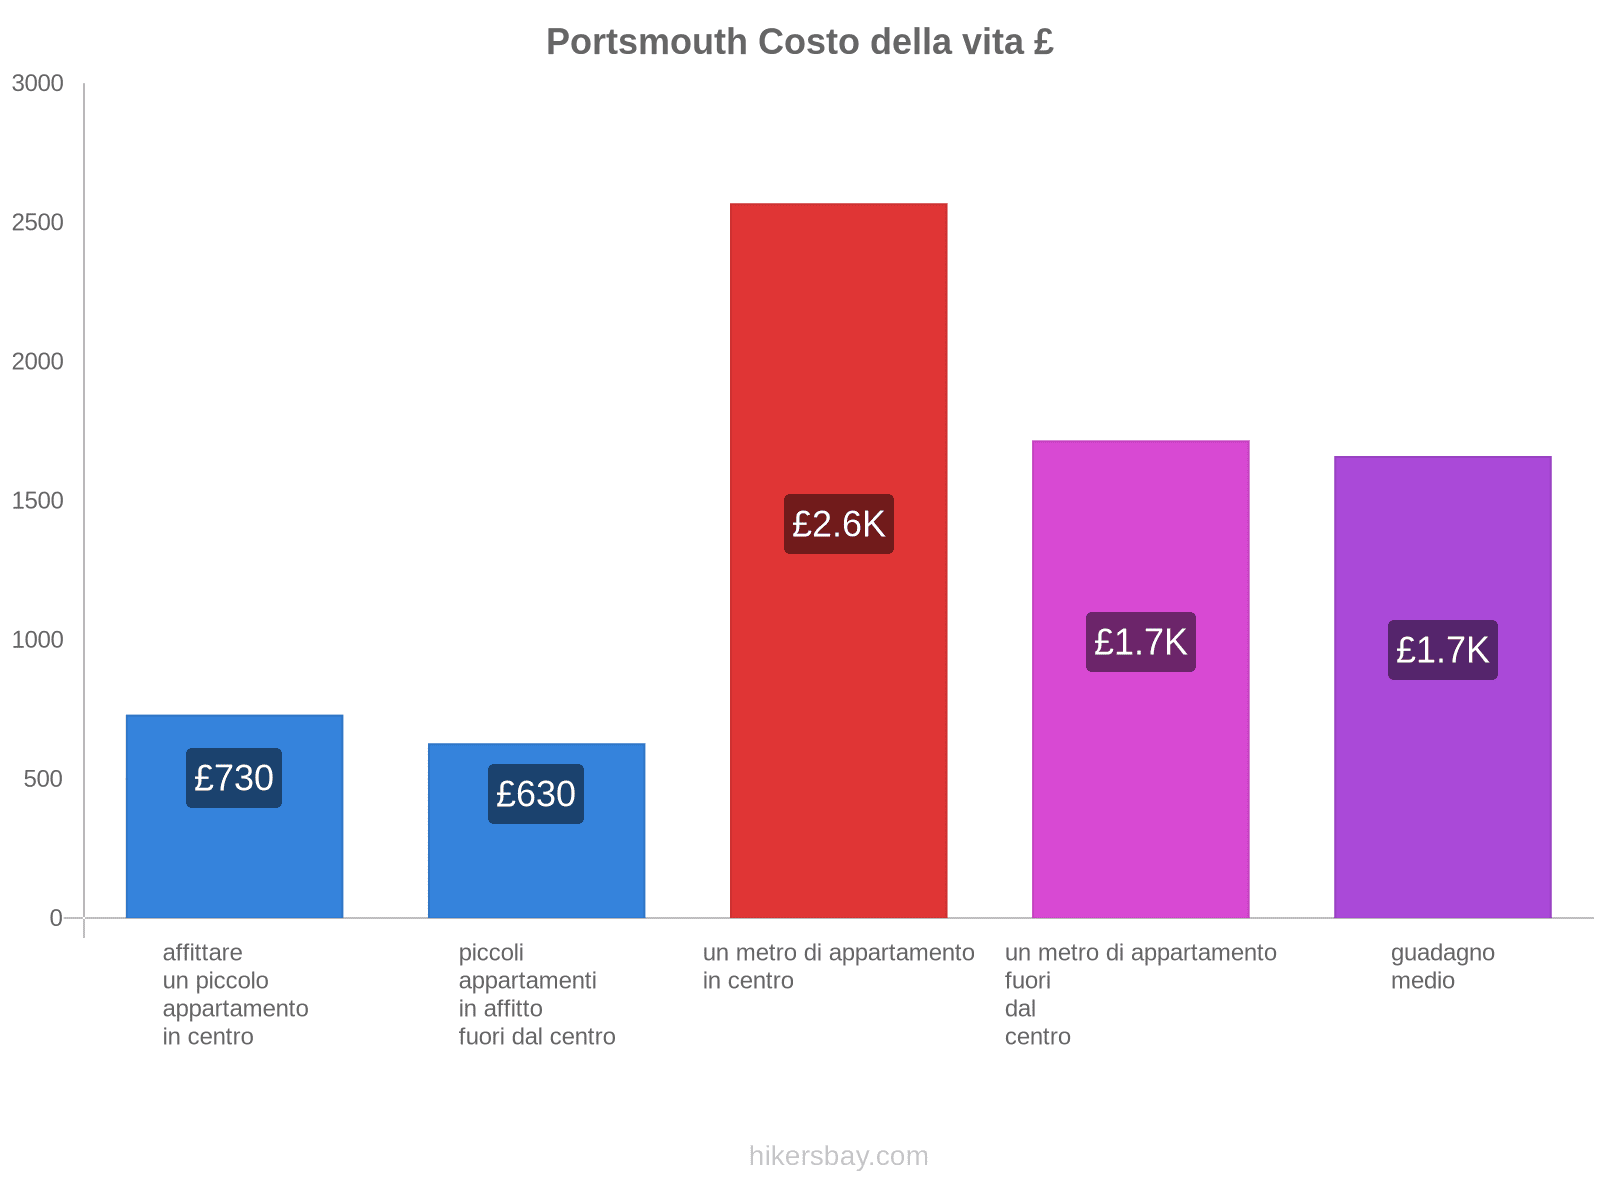 Portsmouth costo della vita hikersbay.com